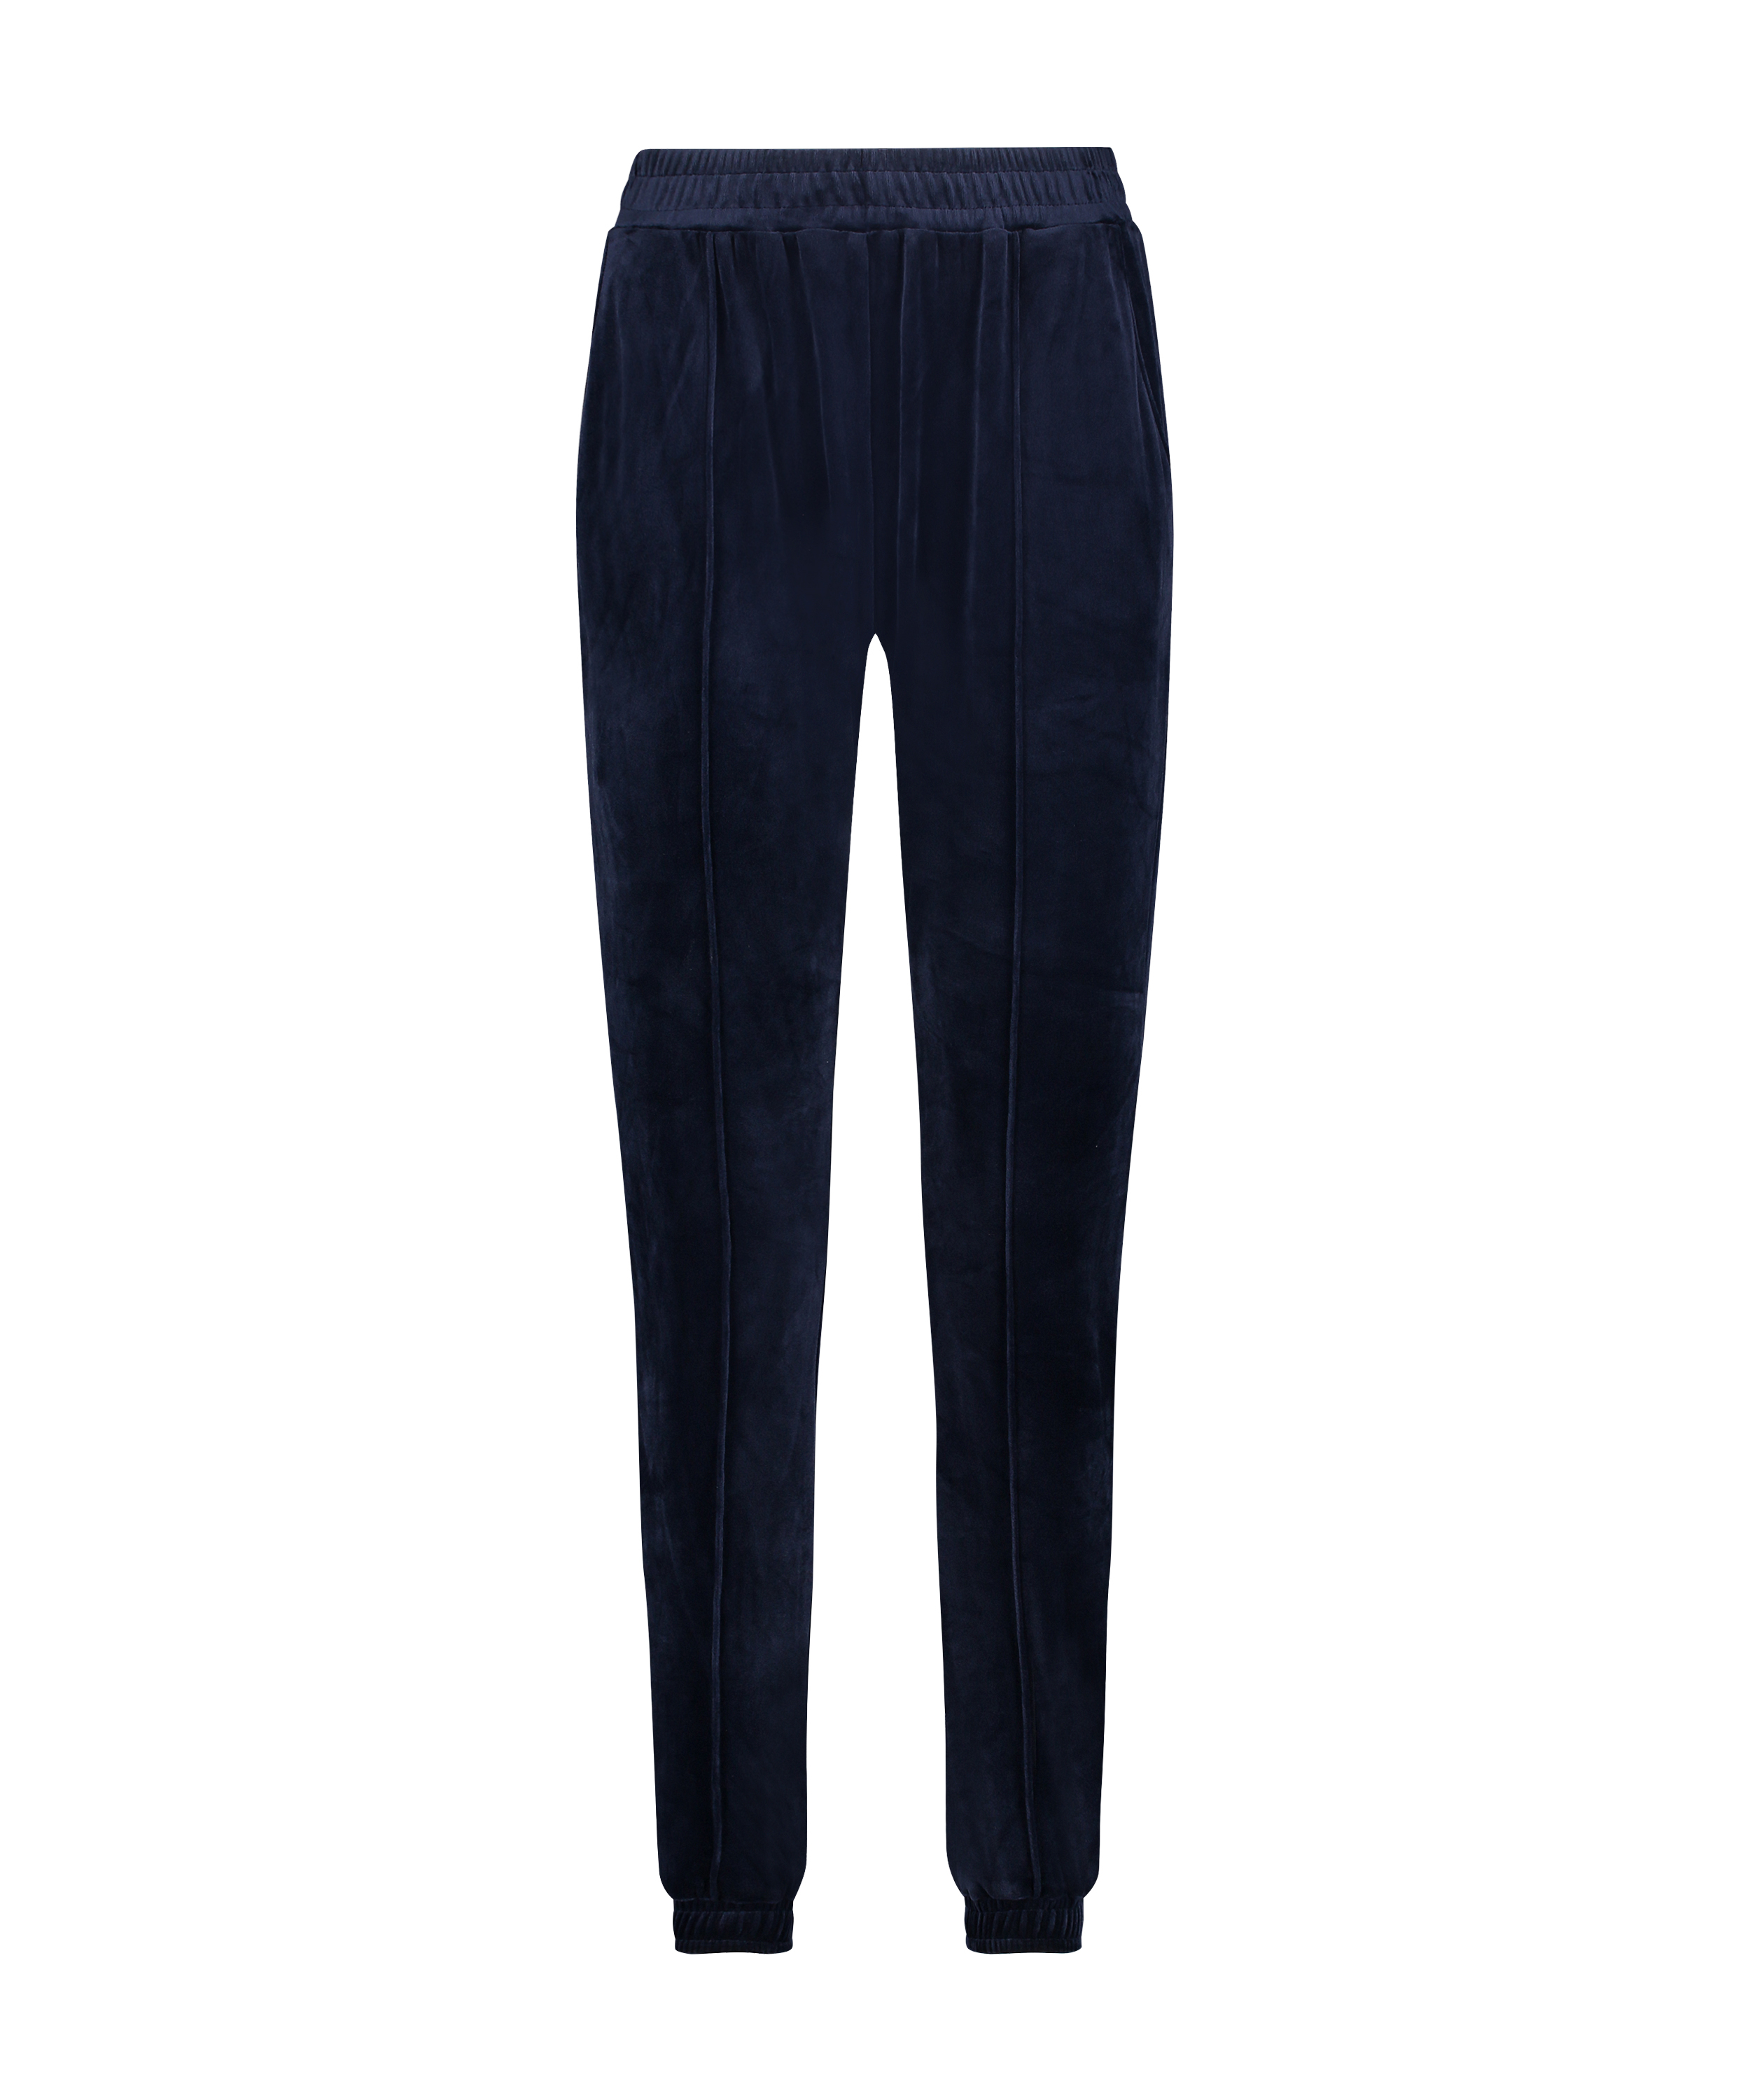 Petite Velour Jogging Pants Pin-tucked, Blue, main